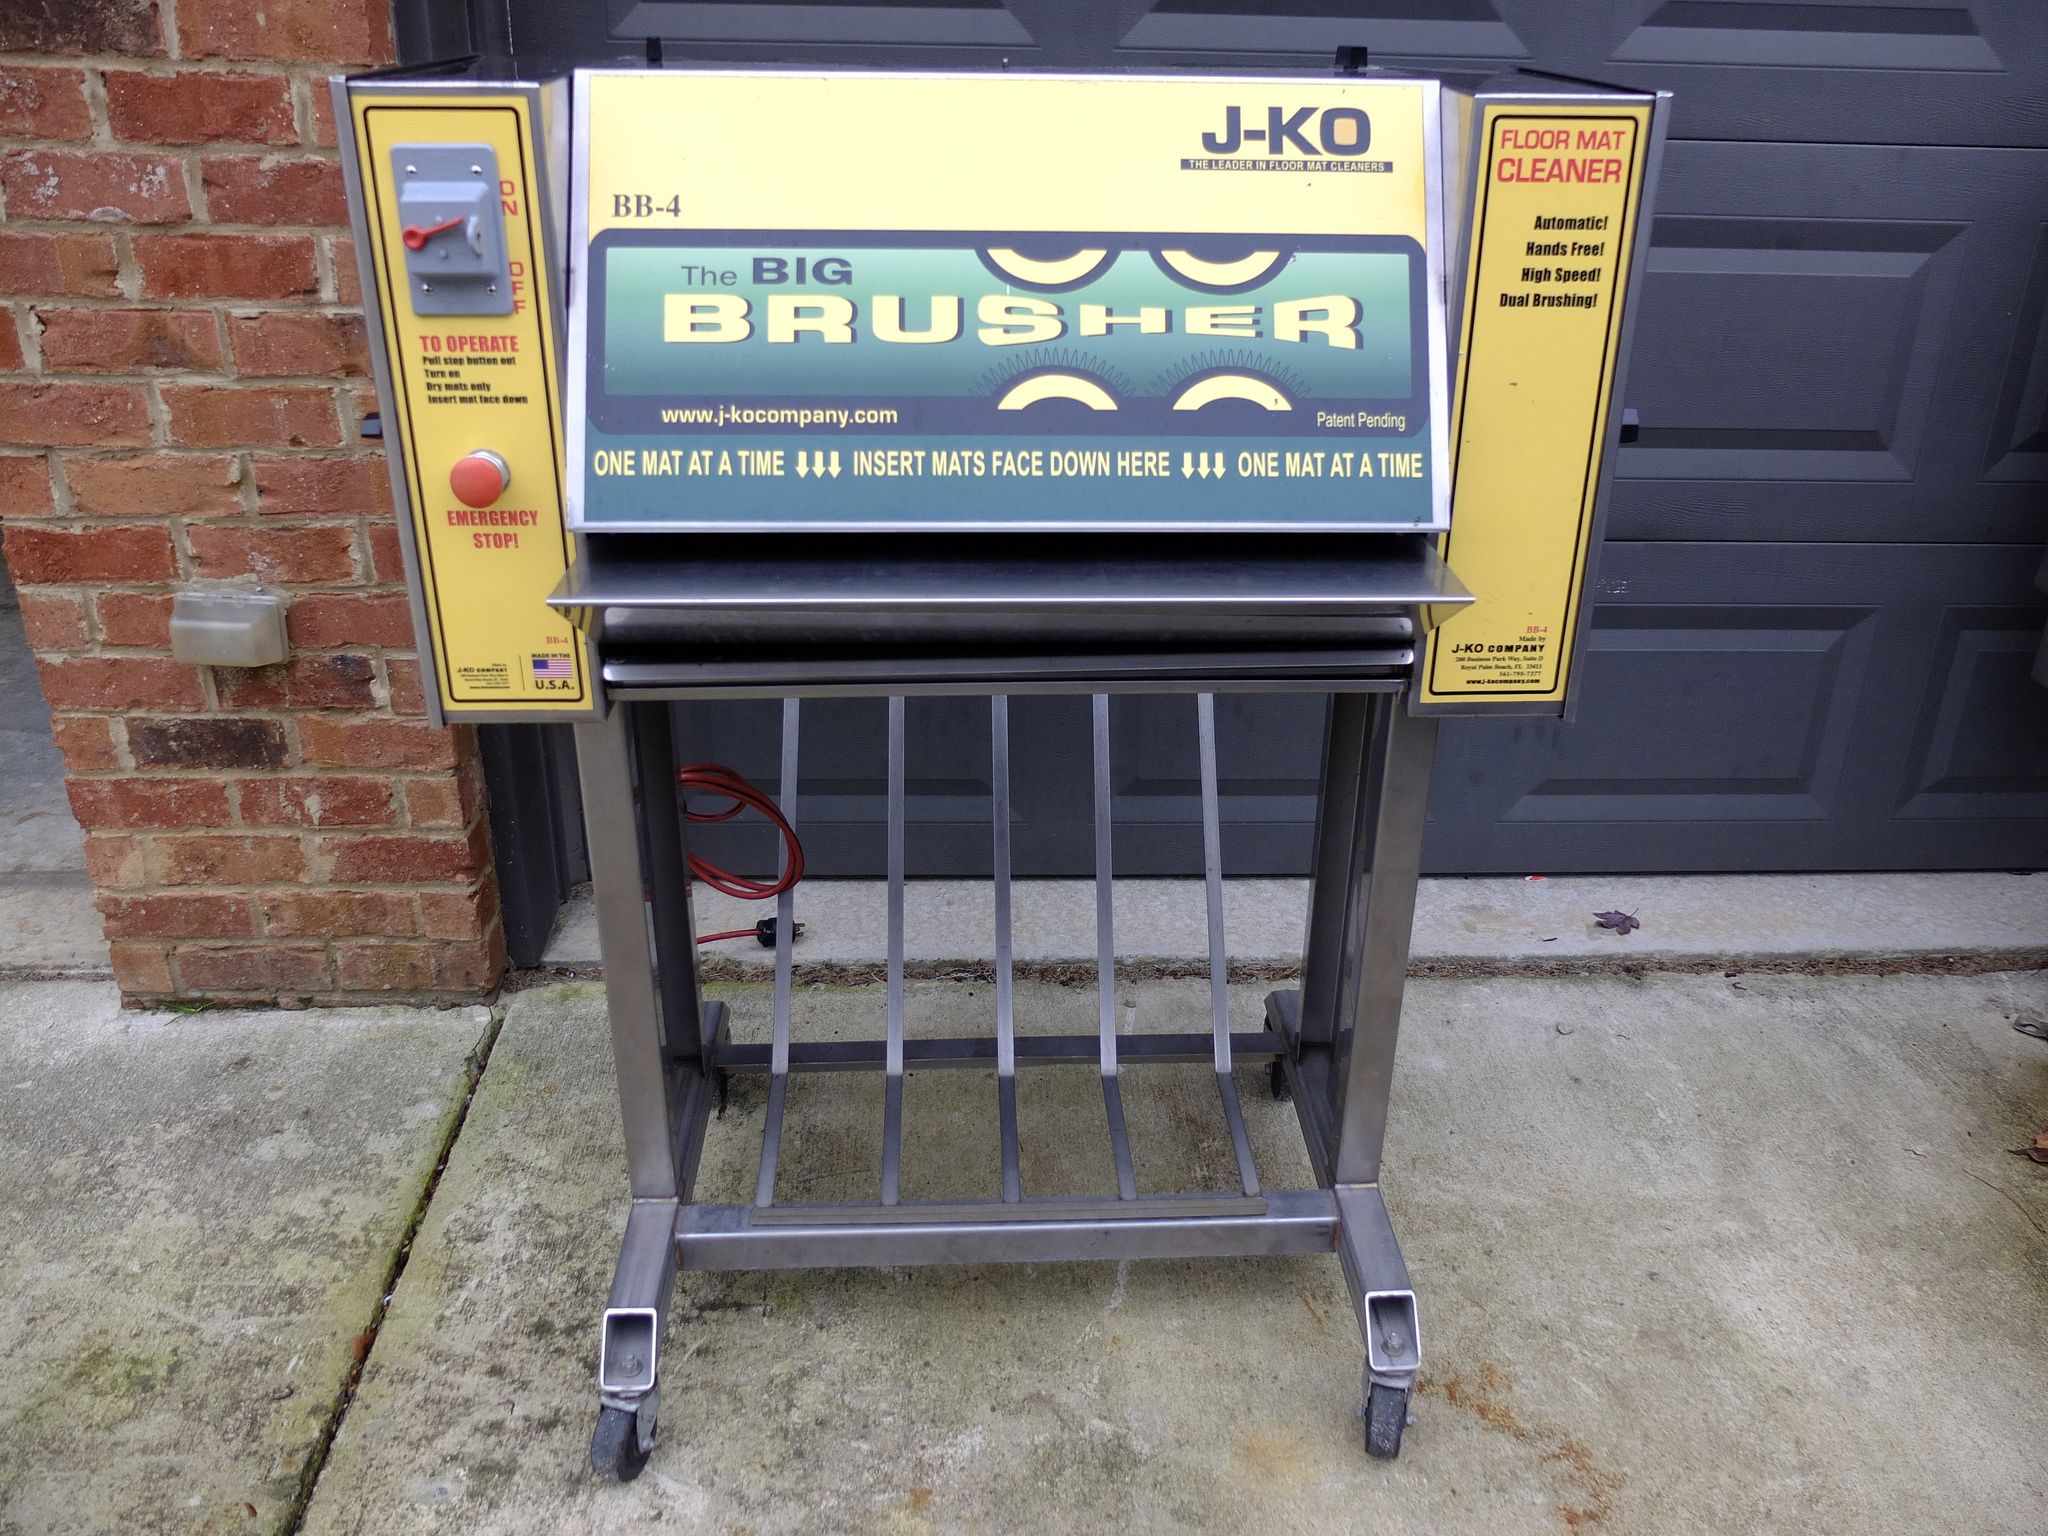 J-KO Big Brusher BB-X Floor Mat Cleaning Machine